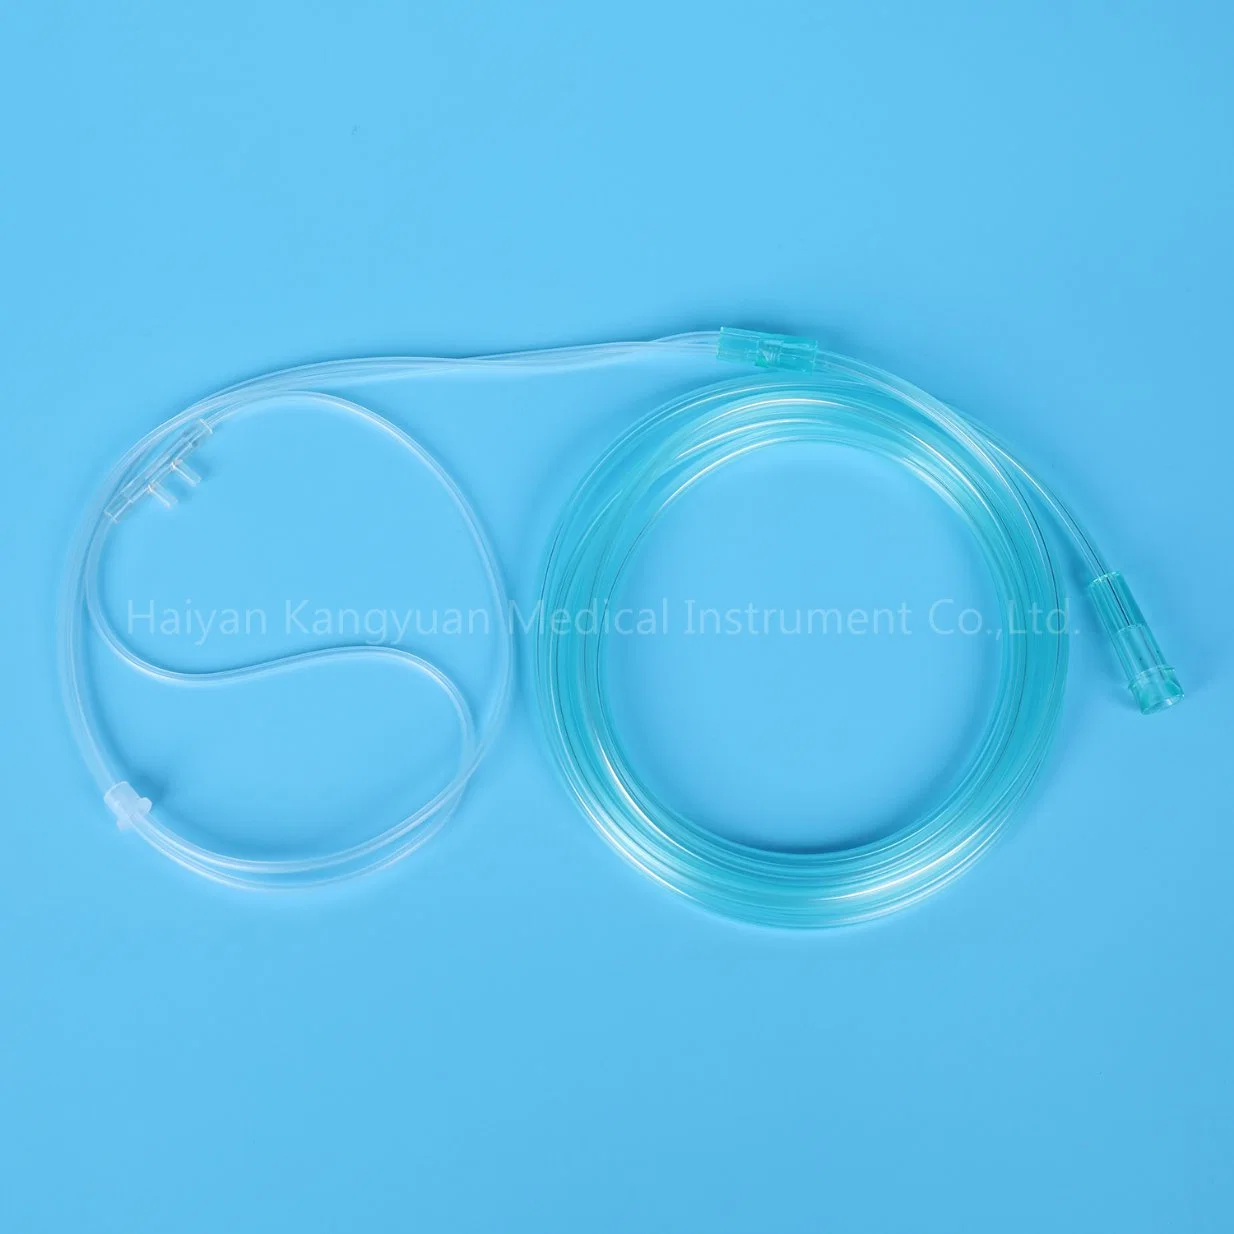 Cánula nasal de oxígeno disponible tubo transparente de PVC material médico de suministros médicos de punta blanda dispositivo Oxigenoterapia el oxígeno de la cánula China